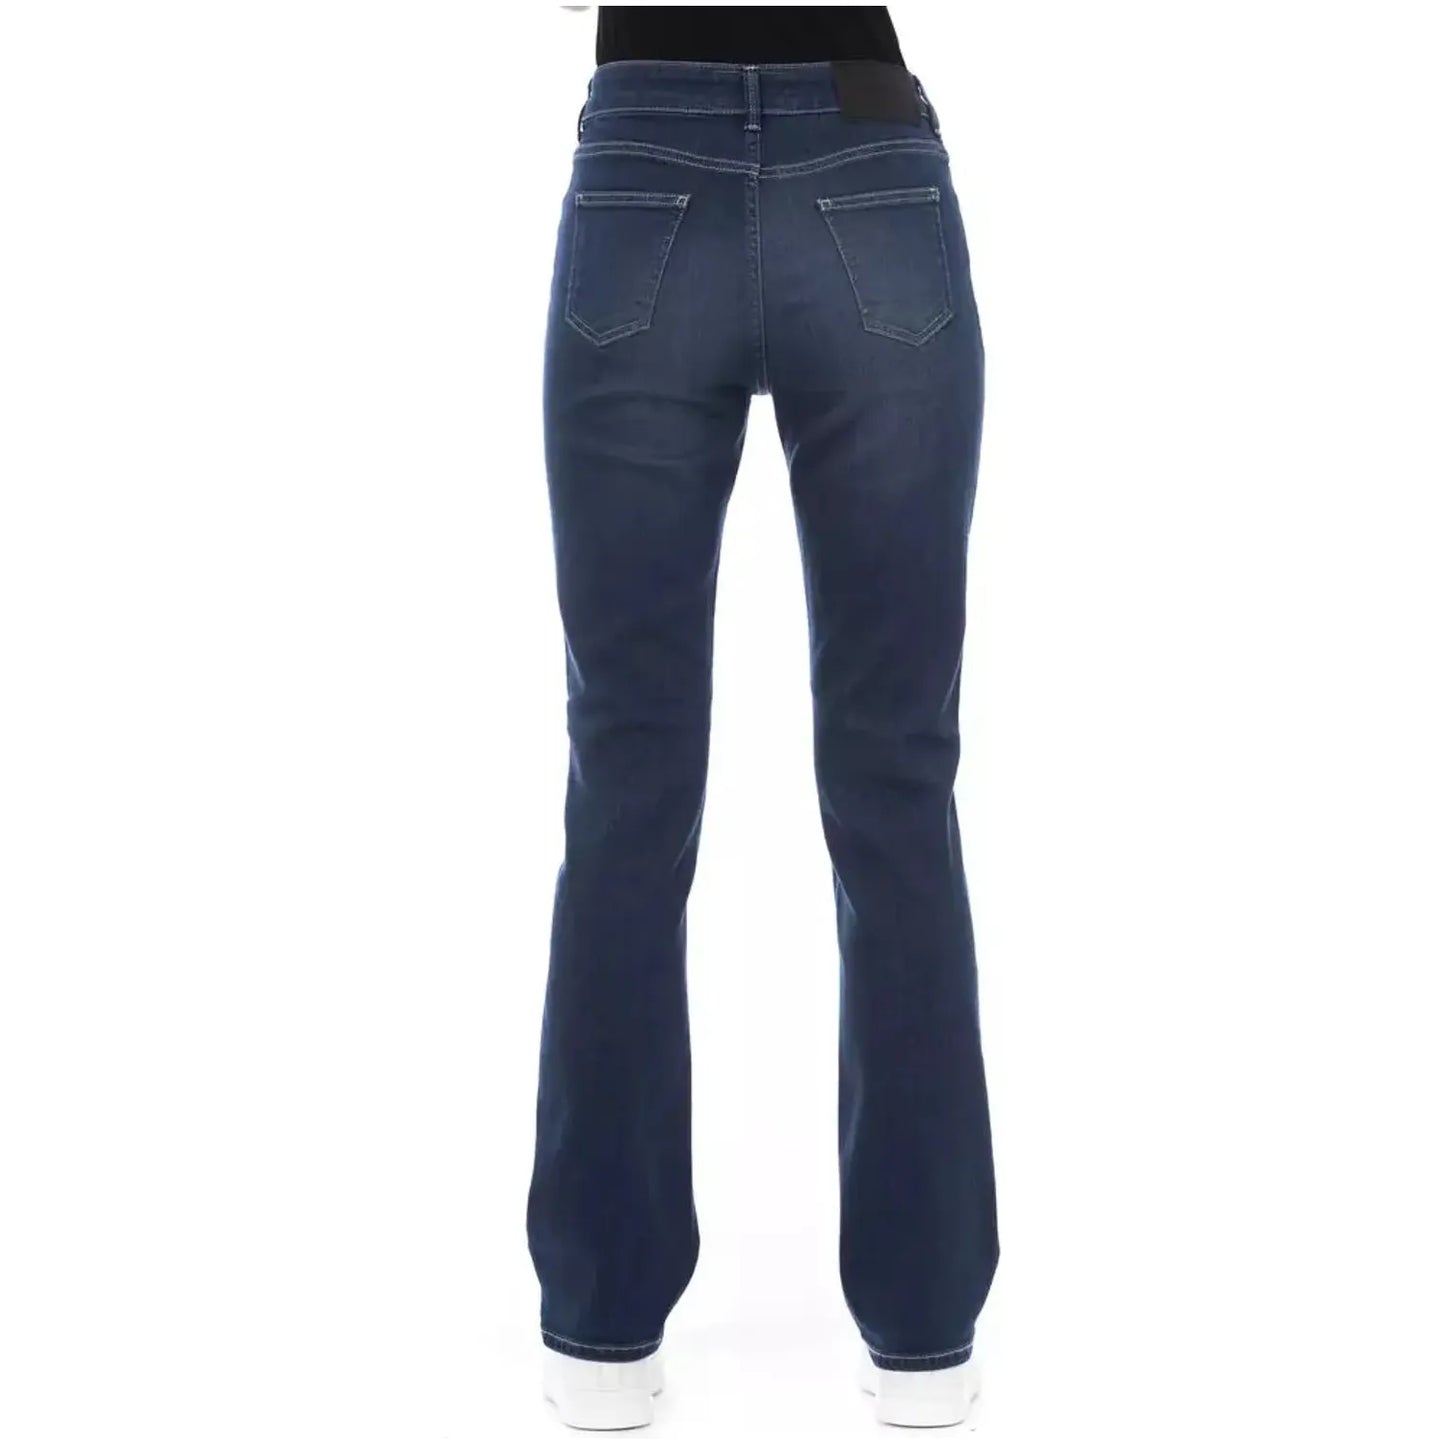 Baldinini Trend Tricolor Accent Designer Jeans blue-cotton-jeans-pant-75